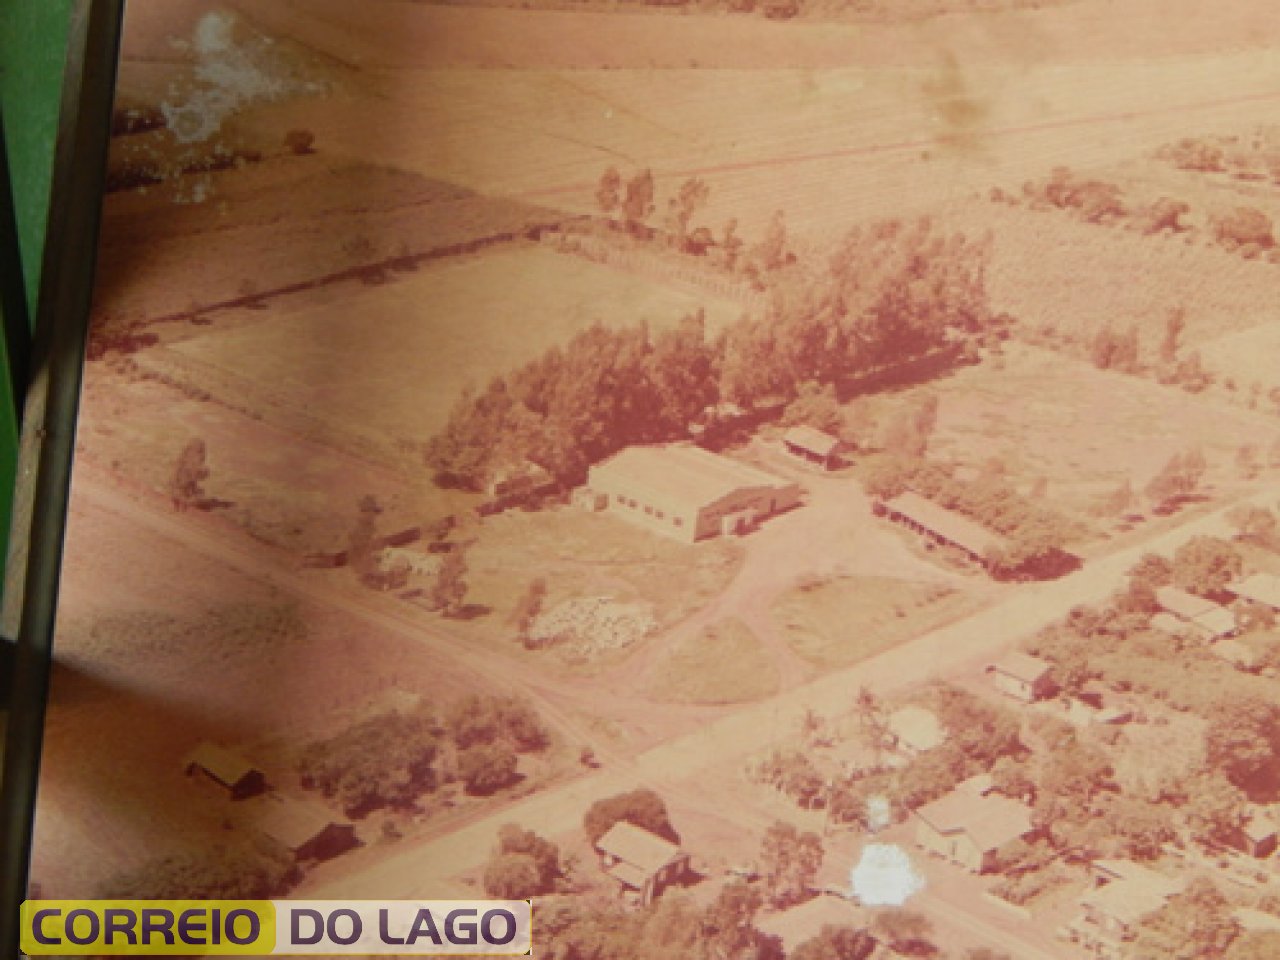 Visão panorâmica do Clube e Campo do União quando de sua fundação em 05/05/1964.